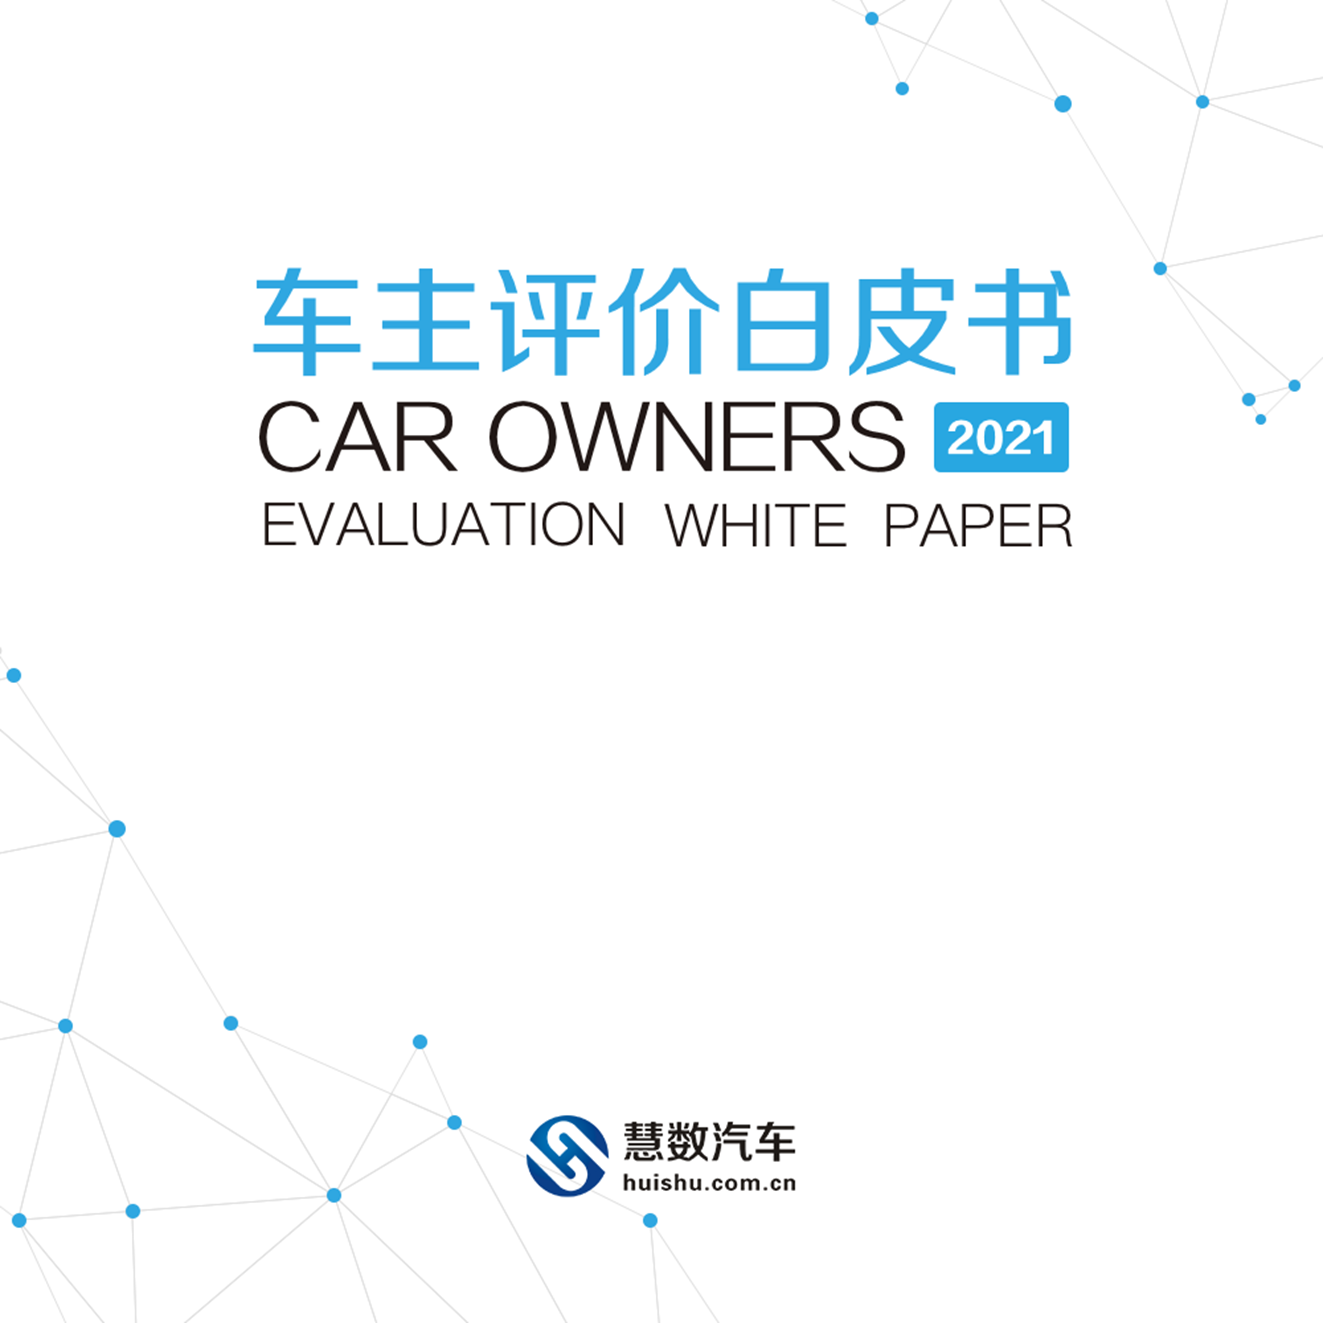 慧数汽车汽车大数据洞察：《车主评价白皮书2021》